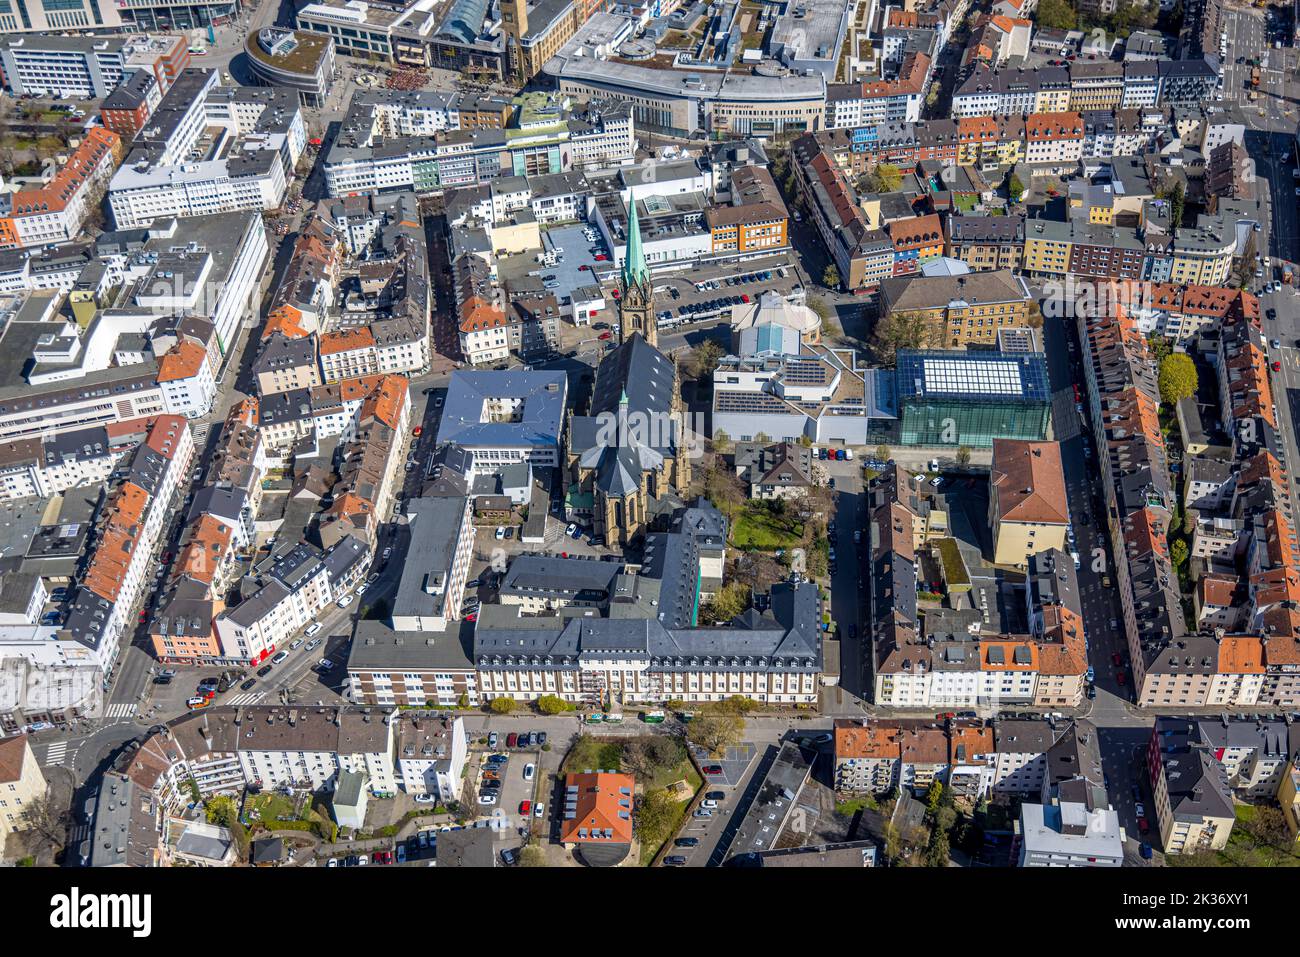 Veduta aerea, centro città con ospedale cattolico Hagen, chiesa di Santa Maria, museo Osthaus, centro città, Hagen, Zona della Ruhr, Renania settentrionale-Vestfalia, Germa Foto Stock